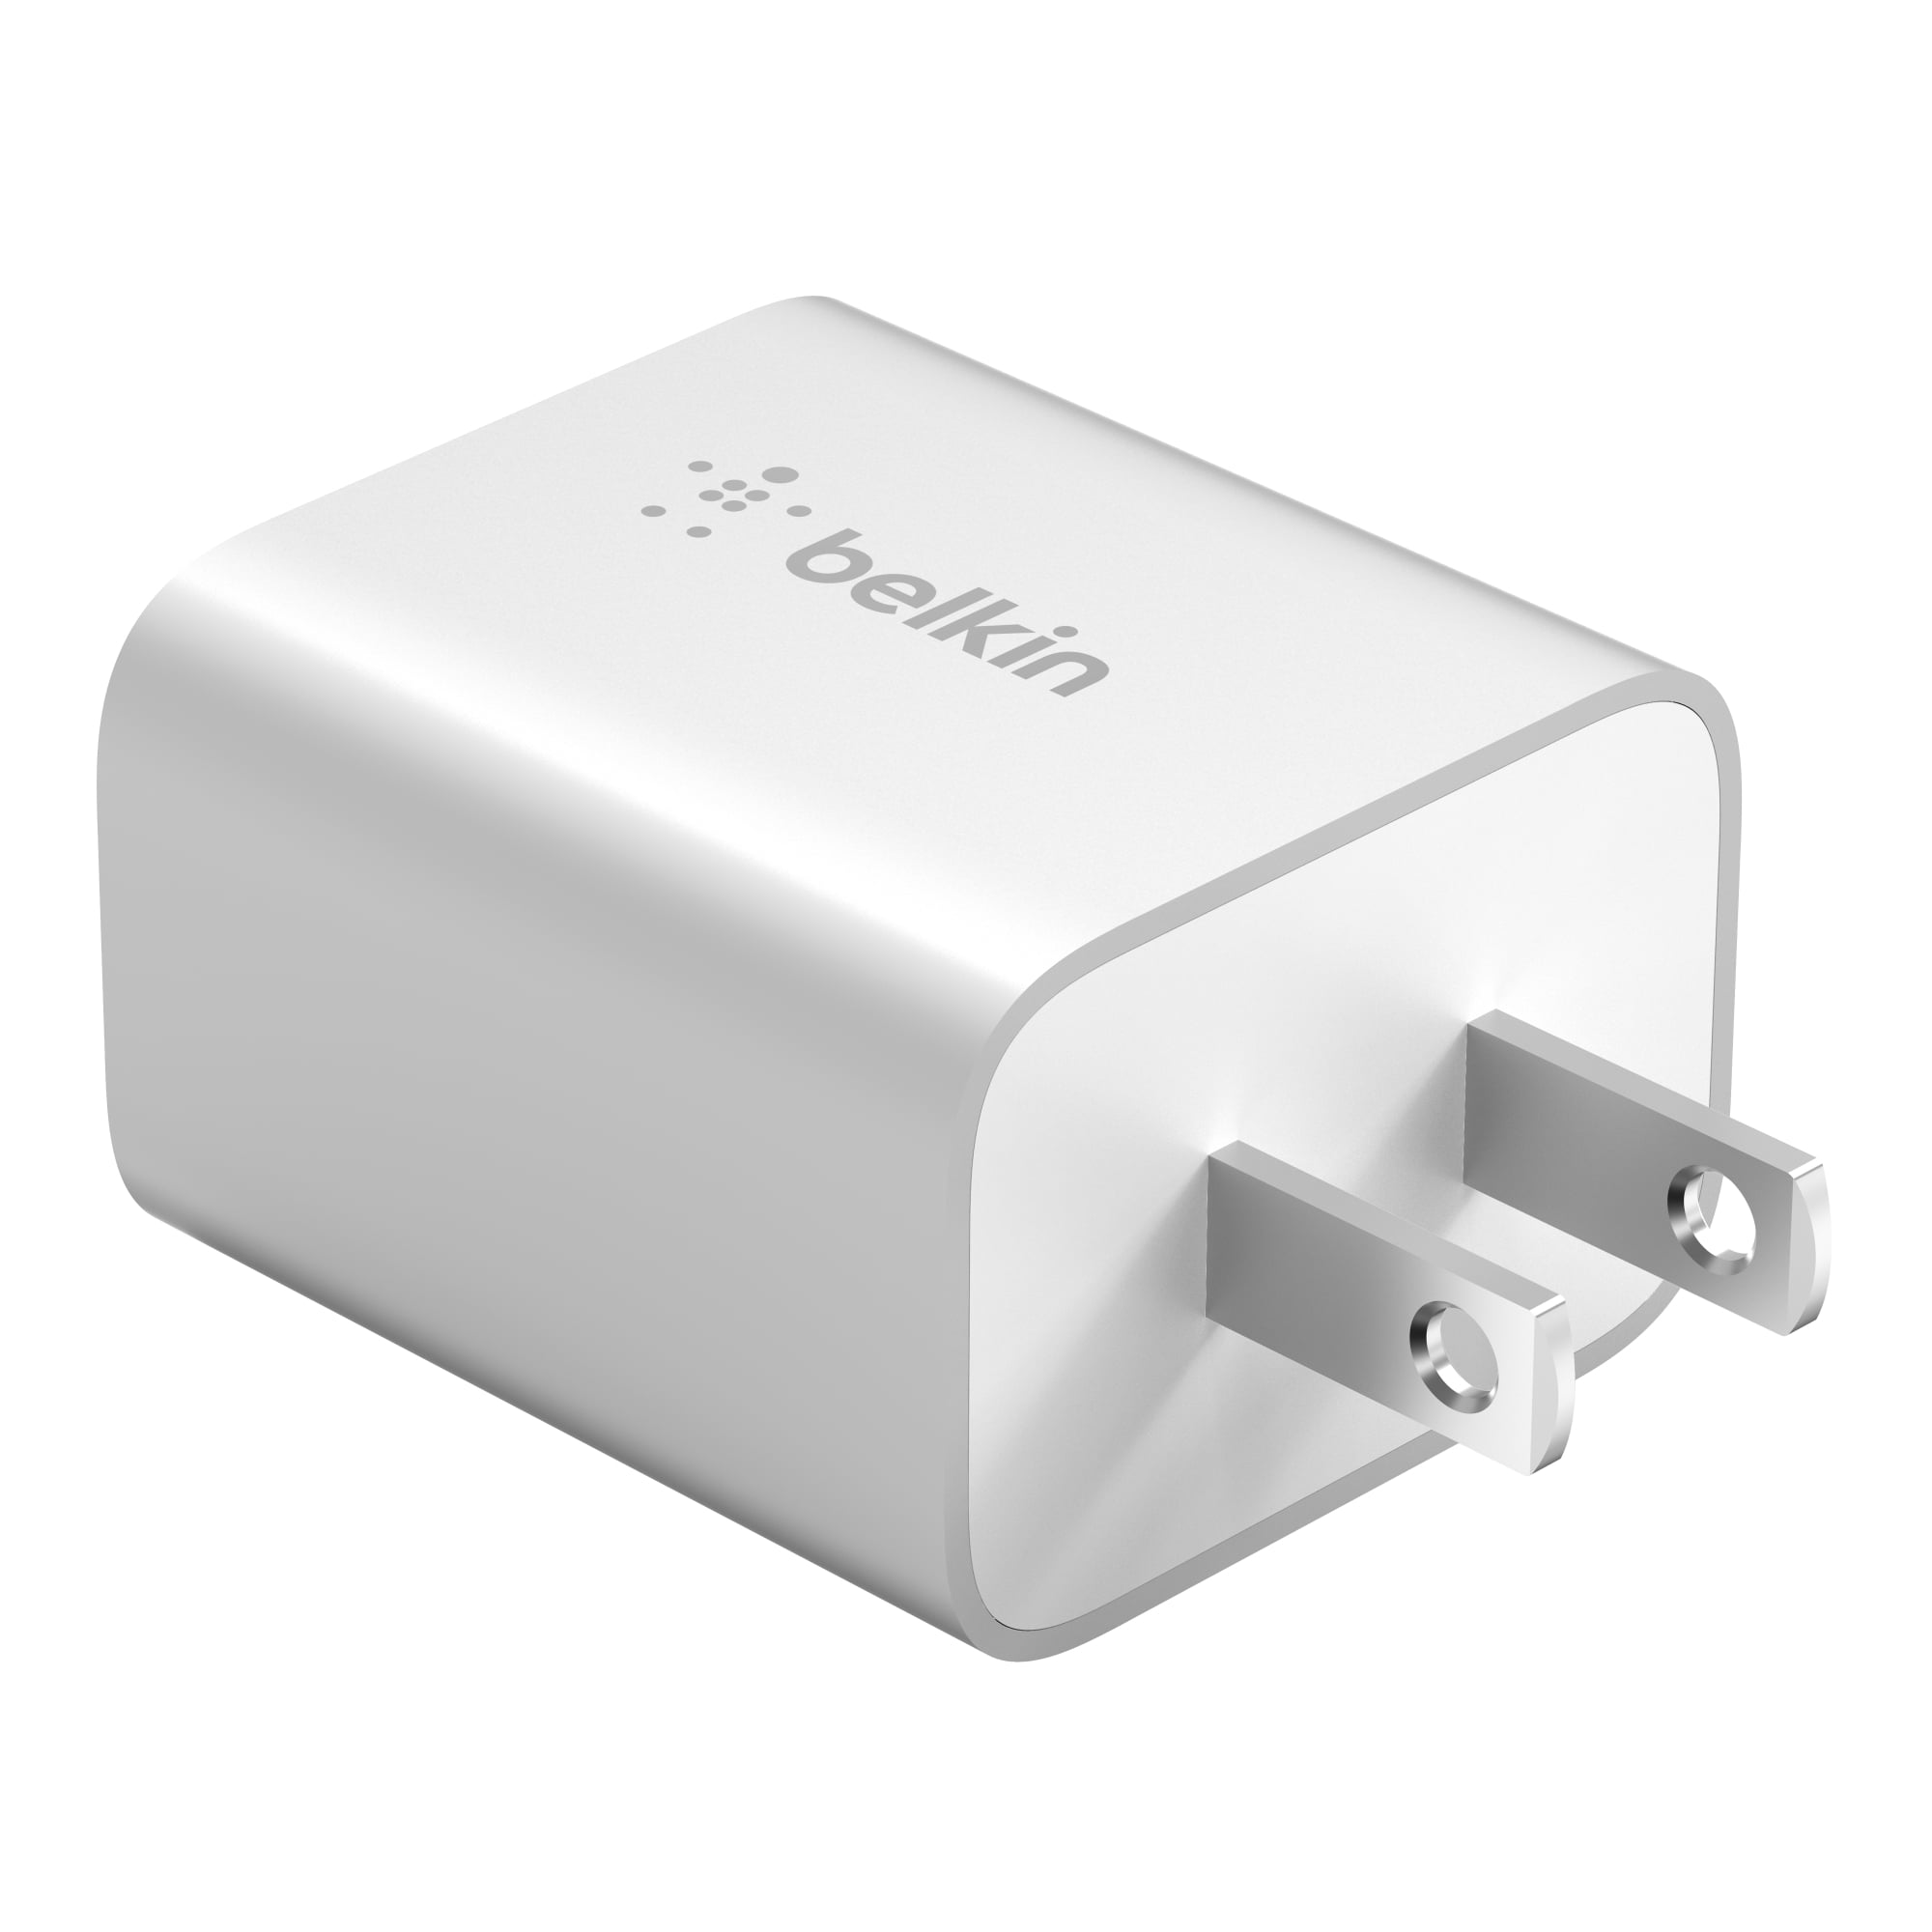 Olvídate del cargador original de Apple y ahorra dinero: este de Belkin  tiene 32W, doble entrada USB y cuesta 13,99 euros